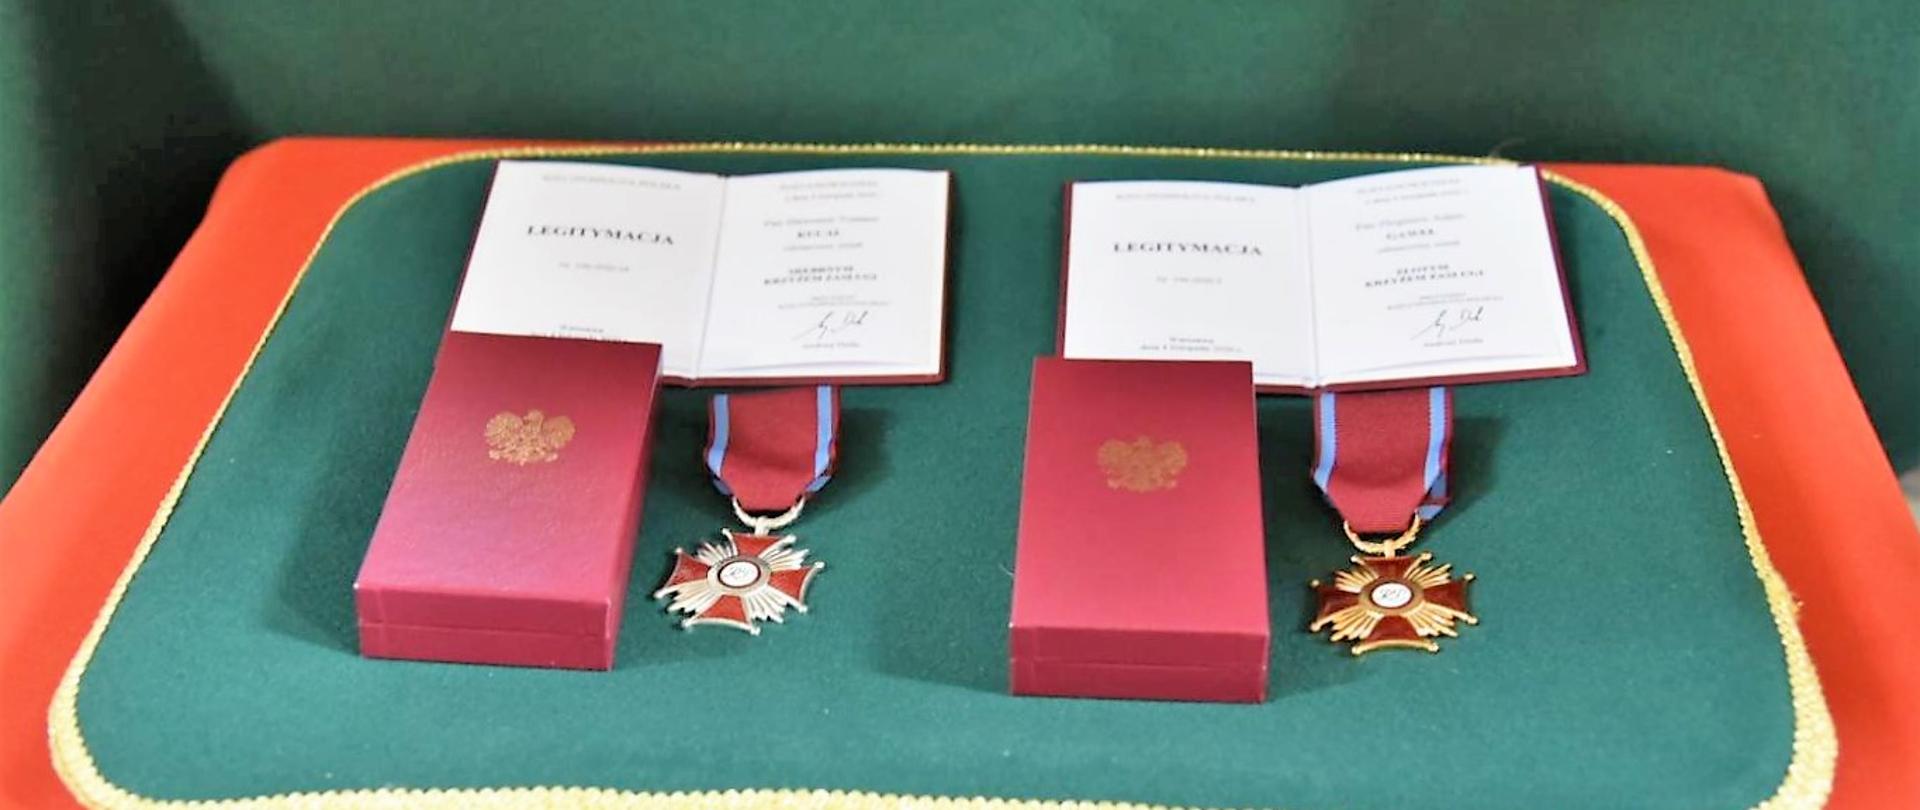 Na zielonej, ozdobnej poduszce leżą 2 odznaczenia, 2 pudełka na odznaczenia i dwie legitymacje dla odznaczonych 